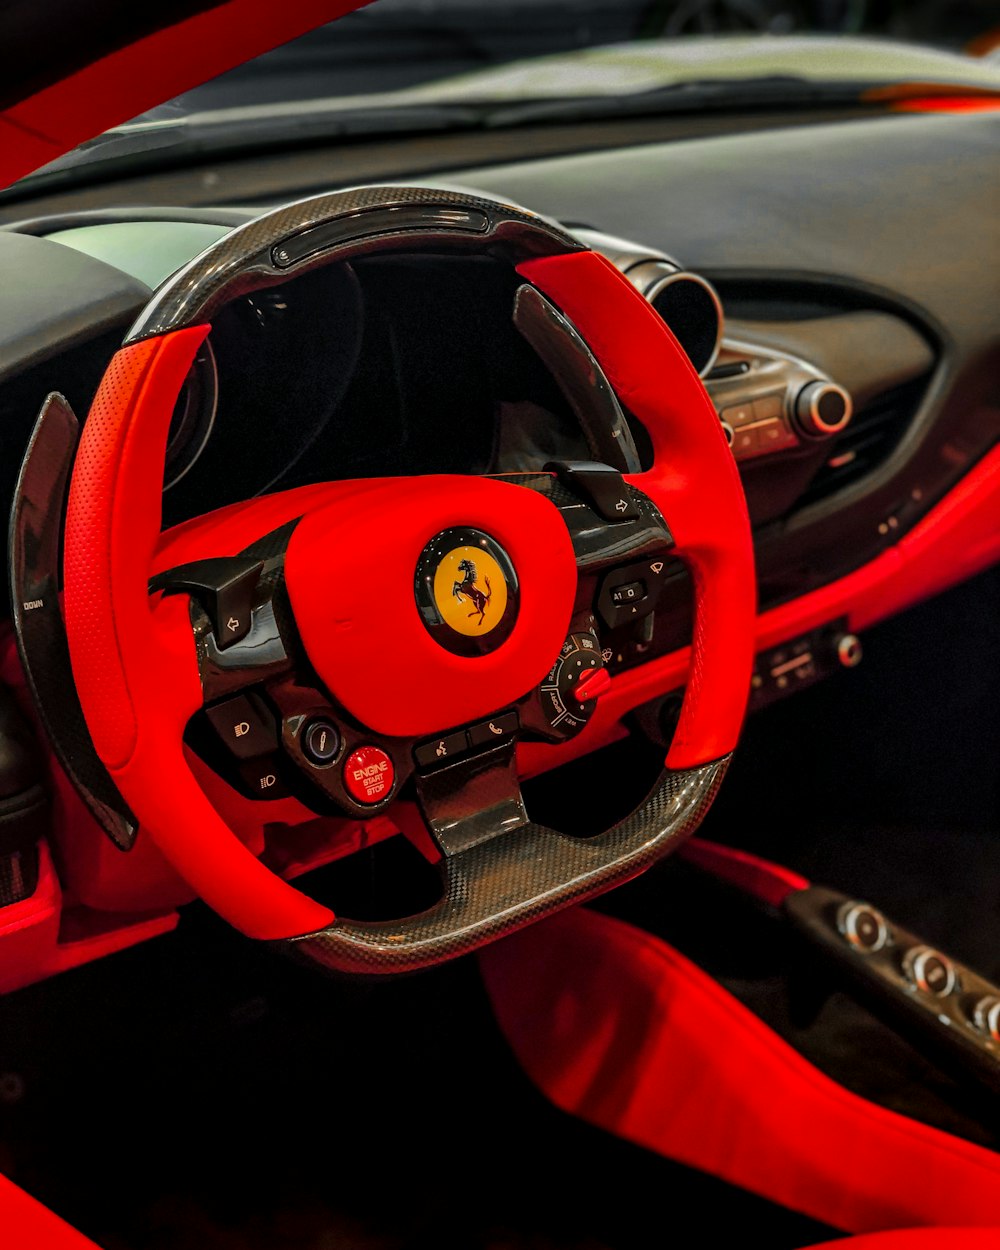 Der Innenraum eines rot-schwarzen Sportwagens